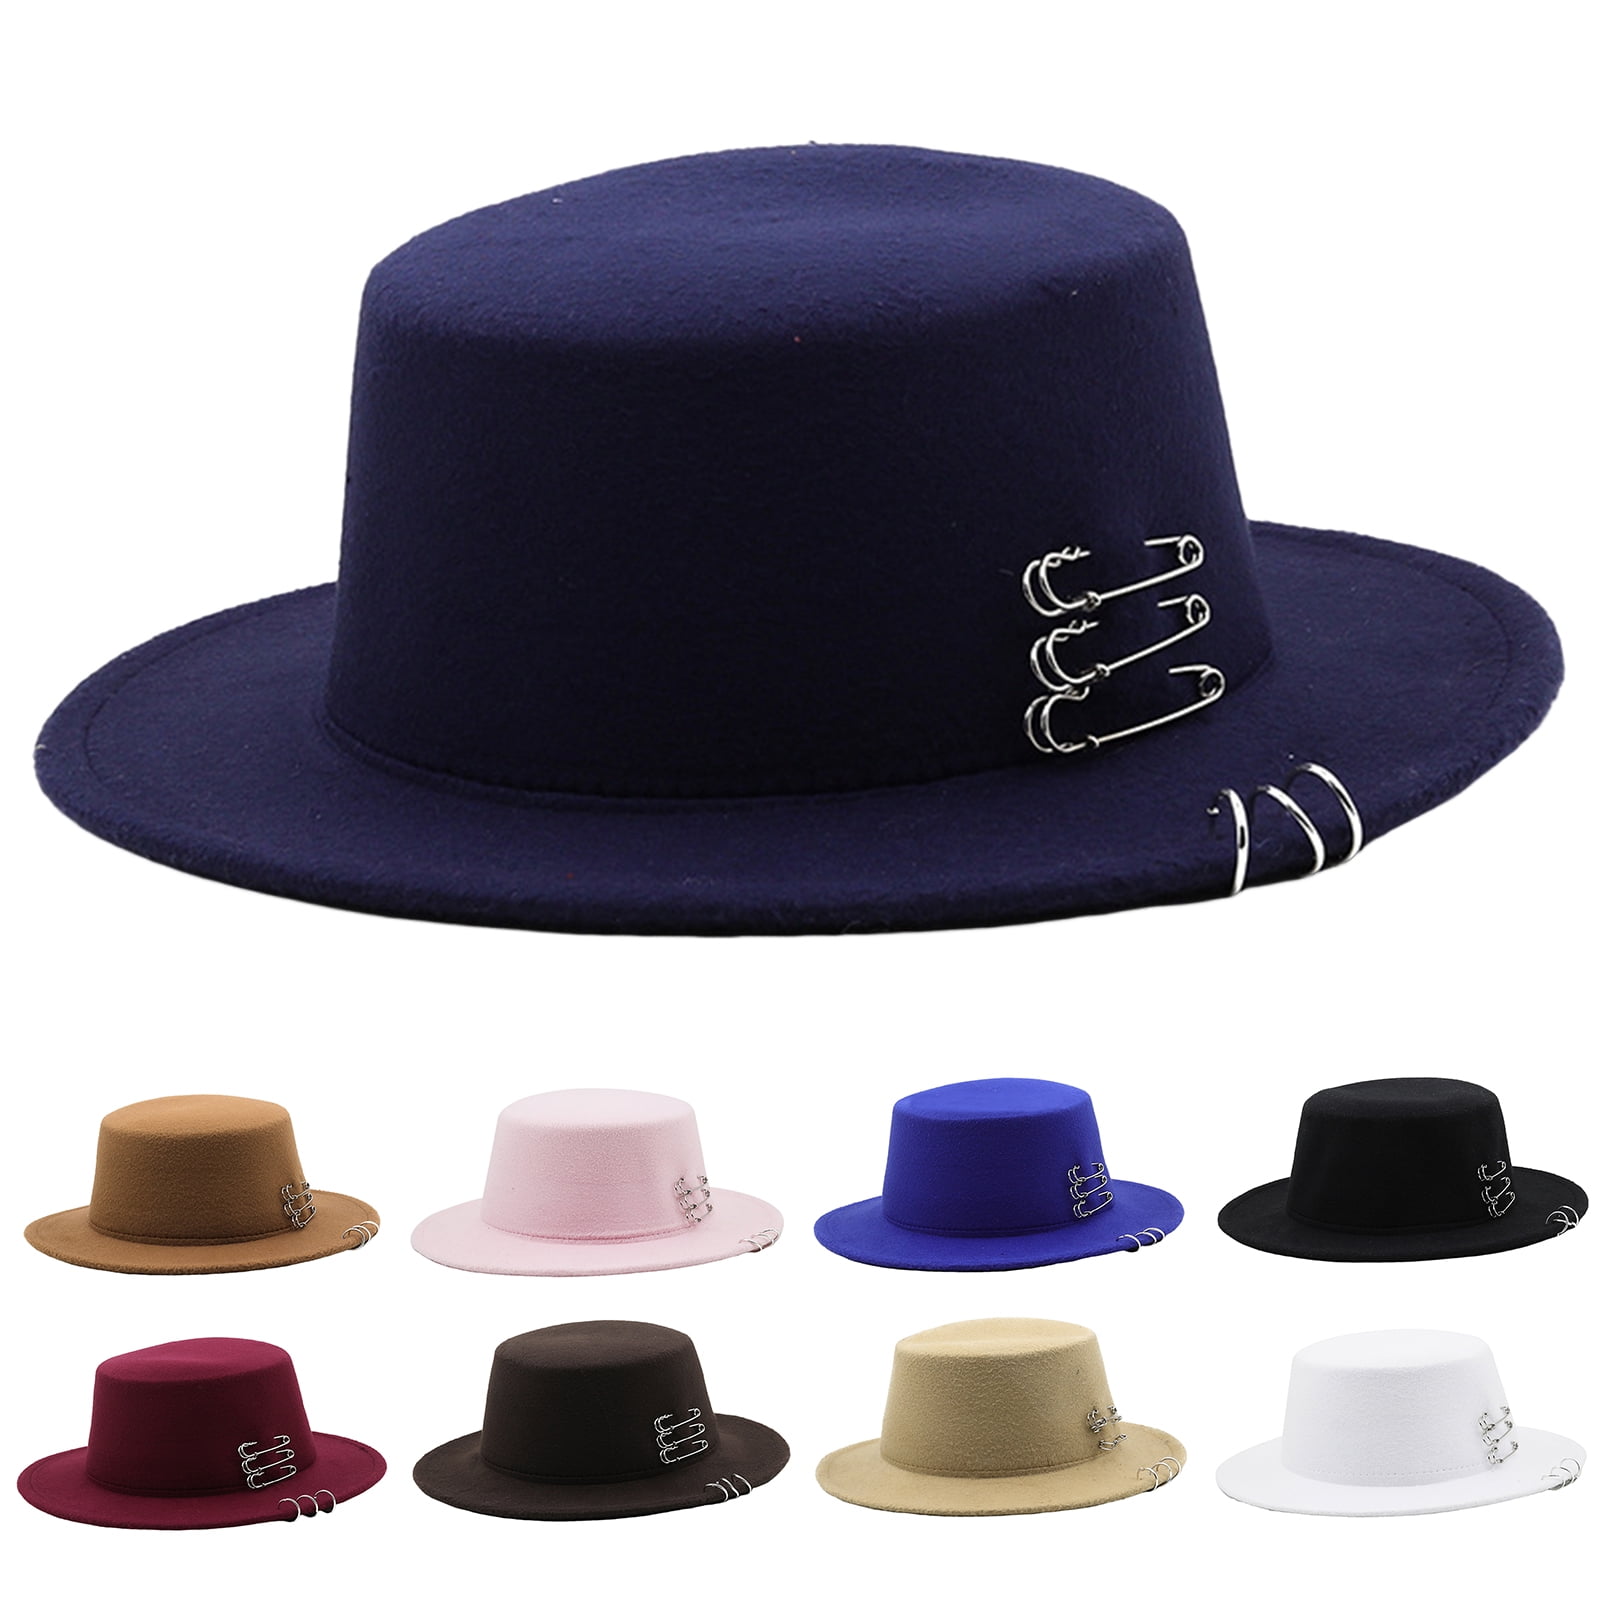 Top hats for men